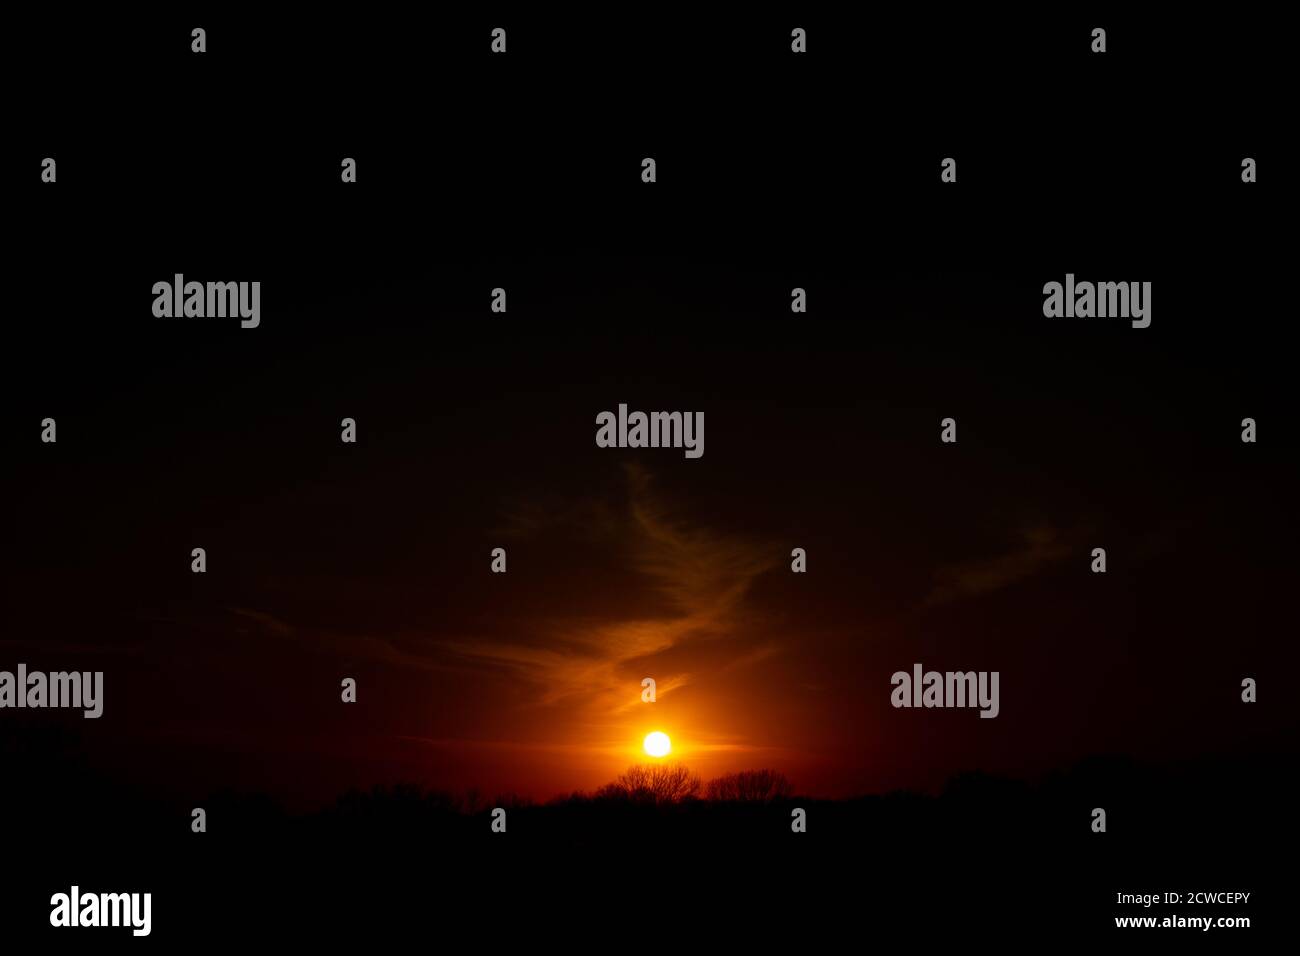 Grafisch verändertes Bild verdunkelt den Himmel eines Ankeny, Iowa, Sonnenuntergang. Stockfoto